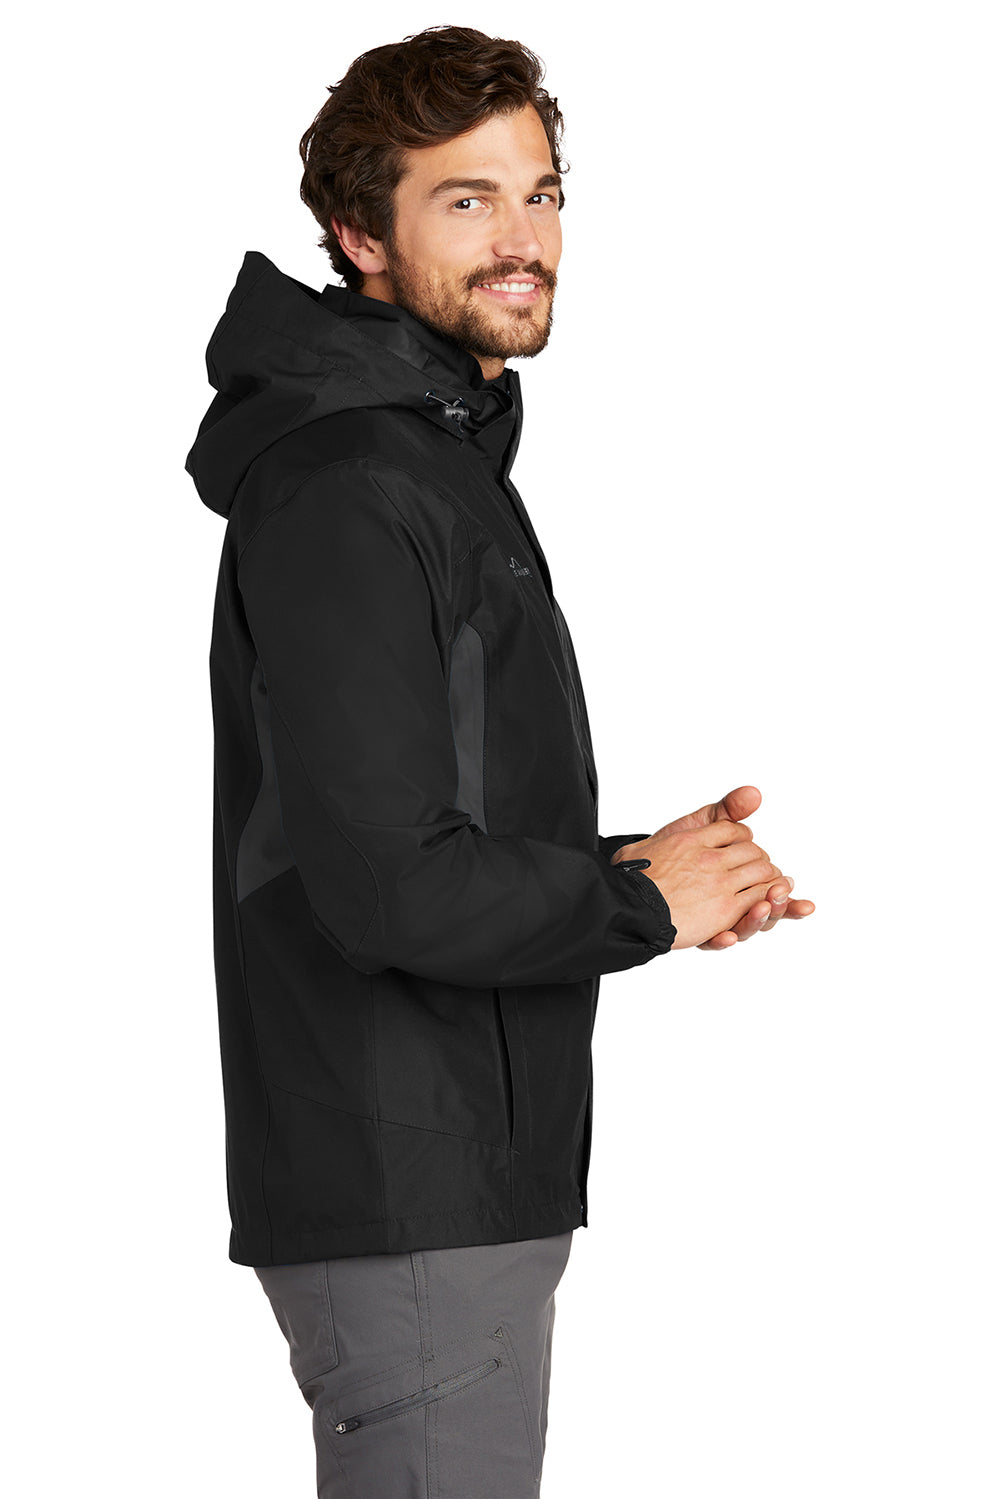 Eddie Bauer EB550 Mens Waterproof Full Zip Hooded Jacket Black Model Side